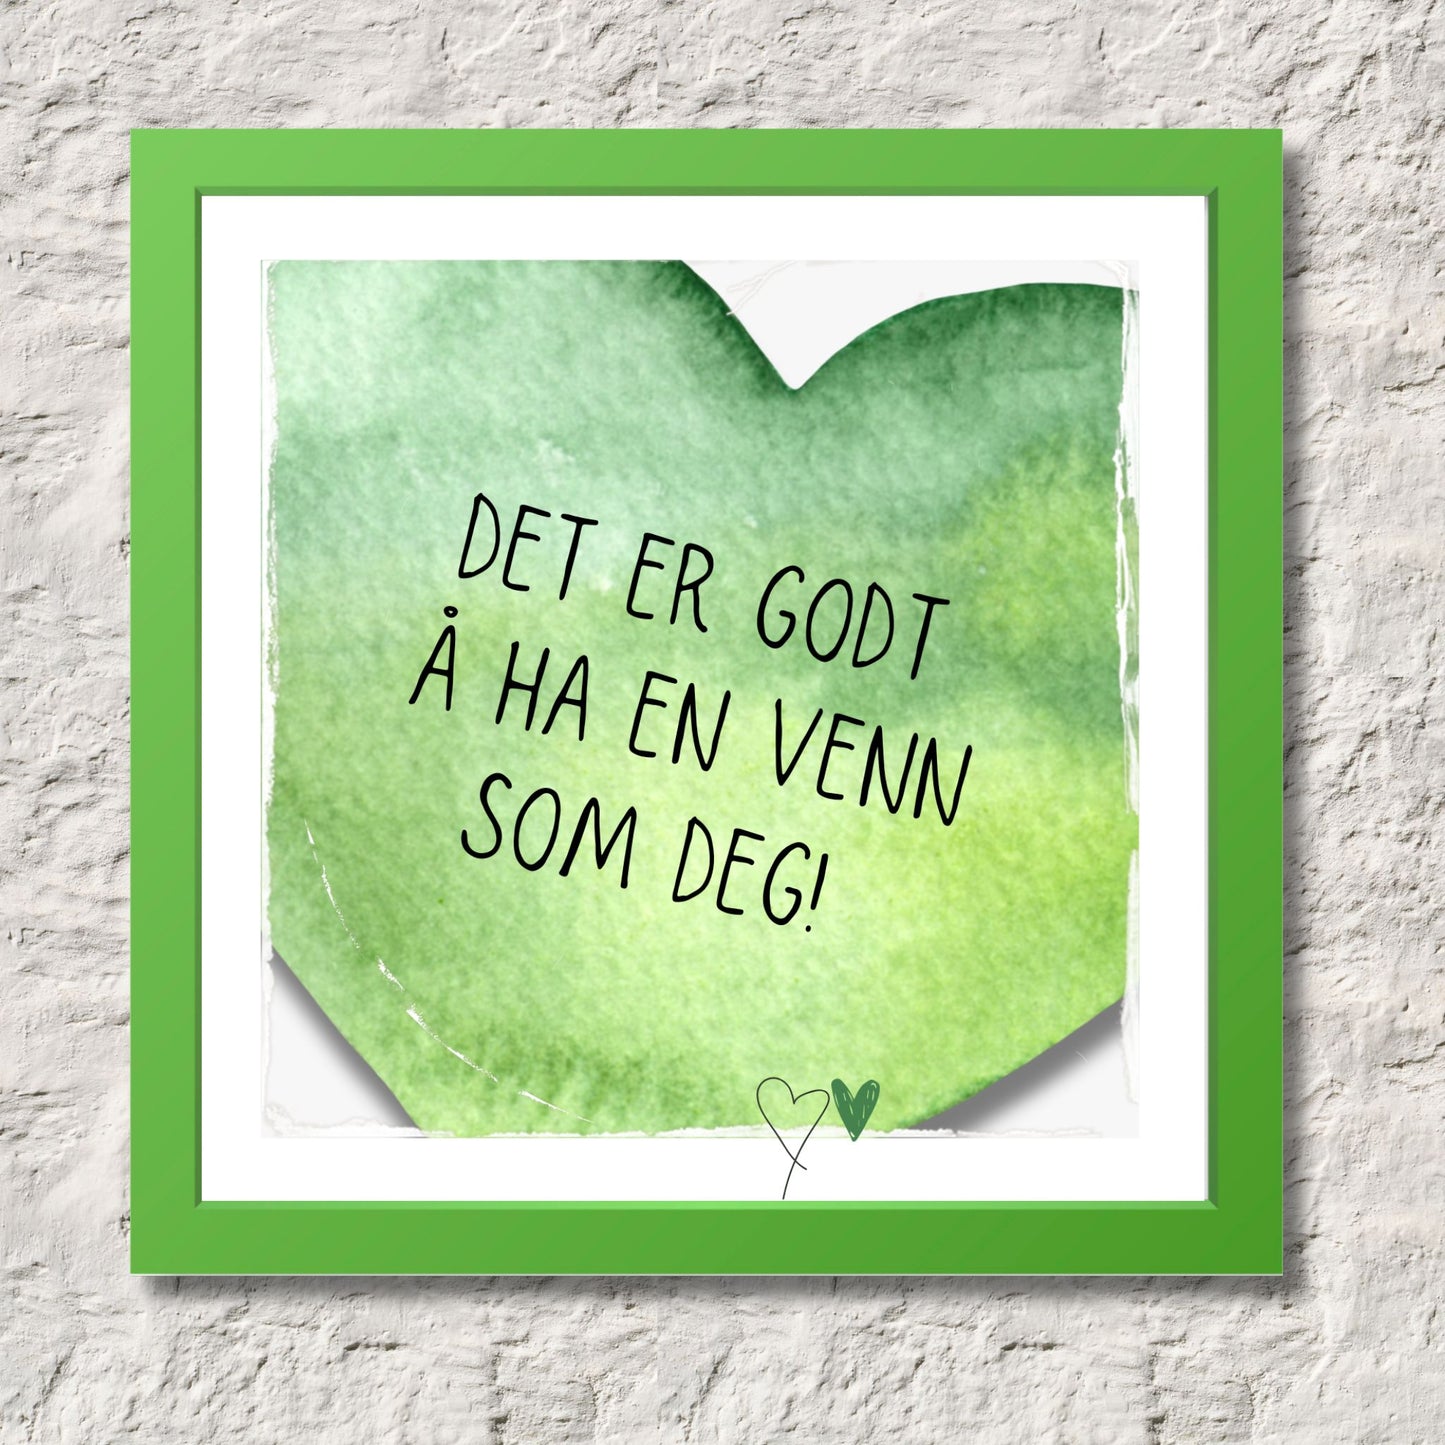 Plakat med grønt hjerte og tekst "Det er godt å ha en venn som deg". Med hvit kant på 1,5 cm.  Illustrasjon viser plakat i grønn ramme.